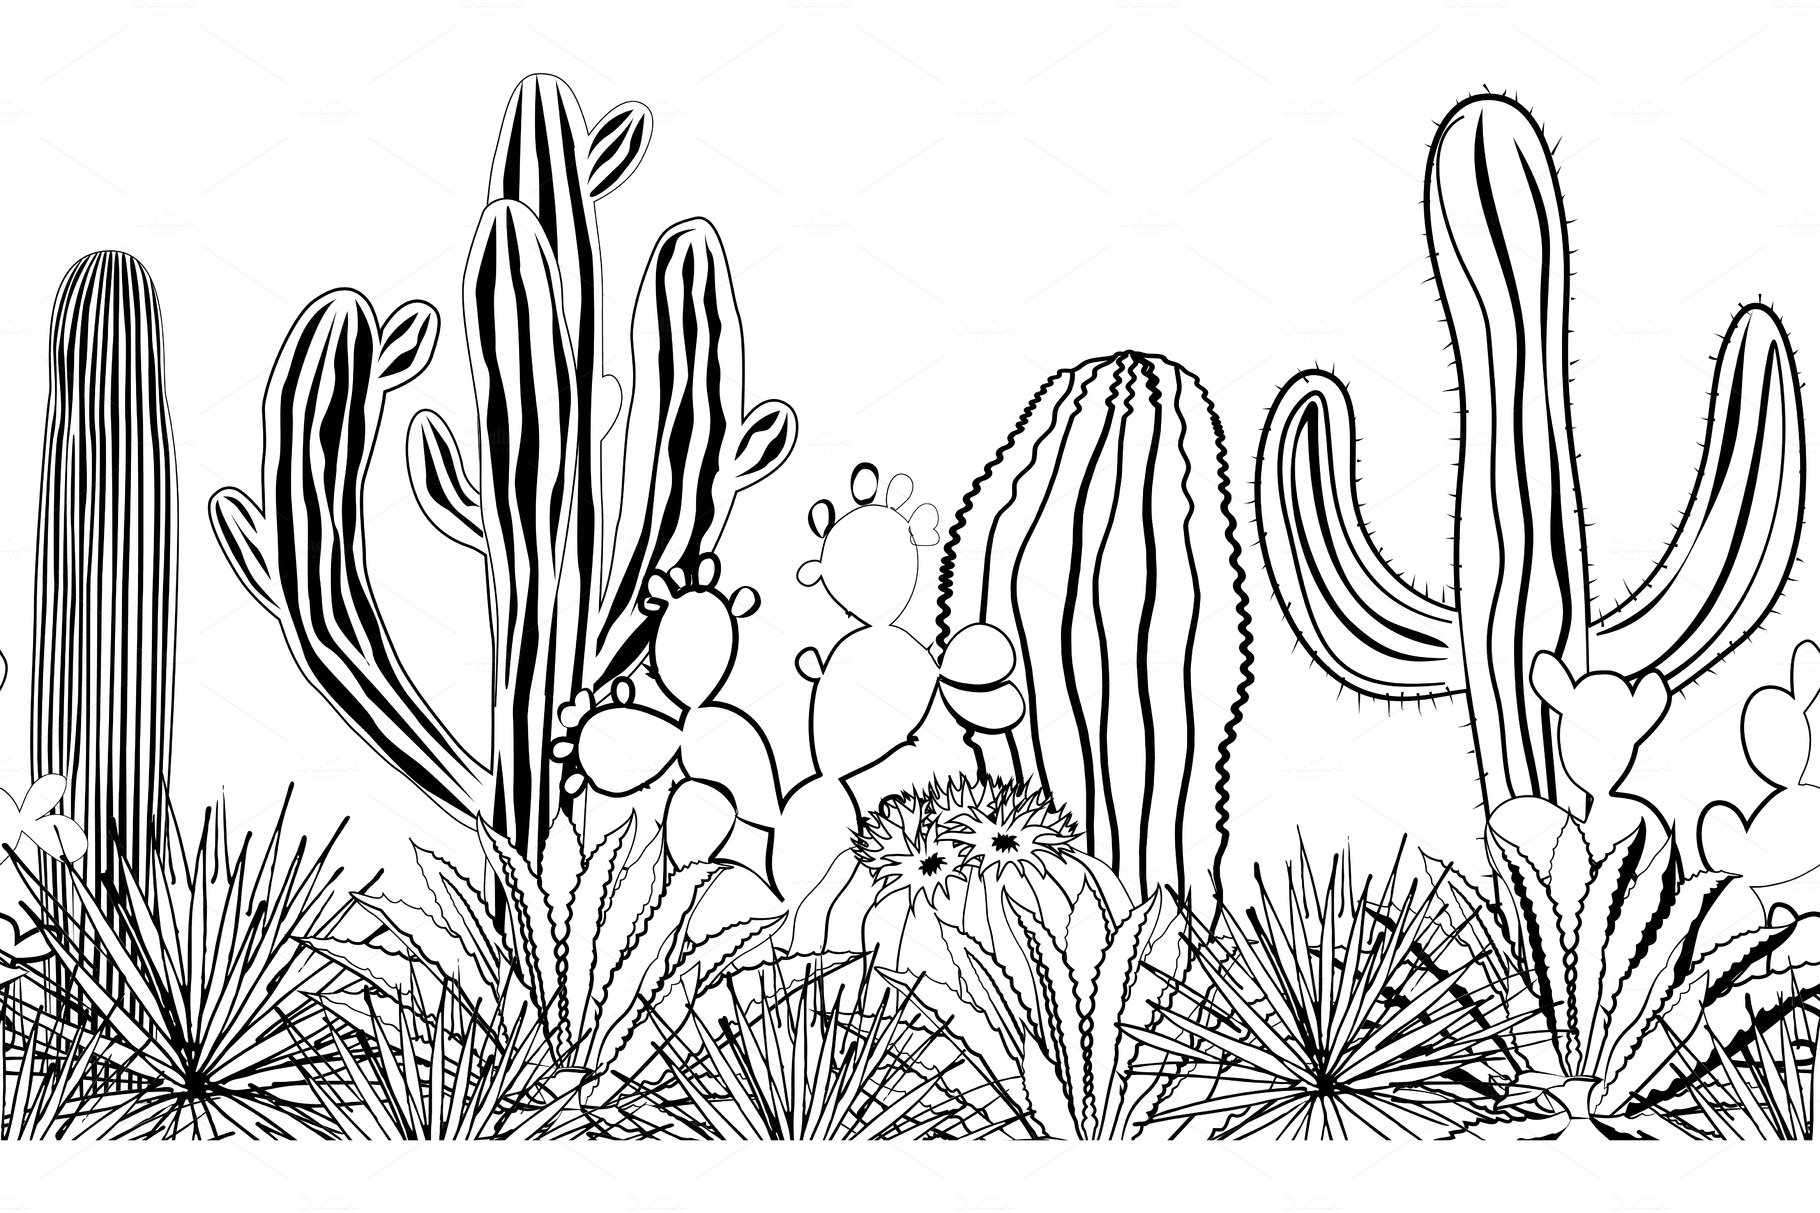 Cactus PNG - Watercolor Cactus, Cactus Flower, Cartoon Cactus, Cactus  Vector, Cute Cactus, Cactus Background, Cactus Border, Cactus Silhouette,  Desert Cactus, Christmas Cactus, Mexican Cactus, Cactus Cute, Cactus  Design, Cactus Plants, Prickly